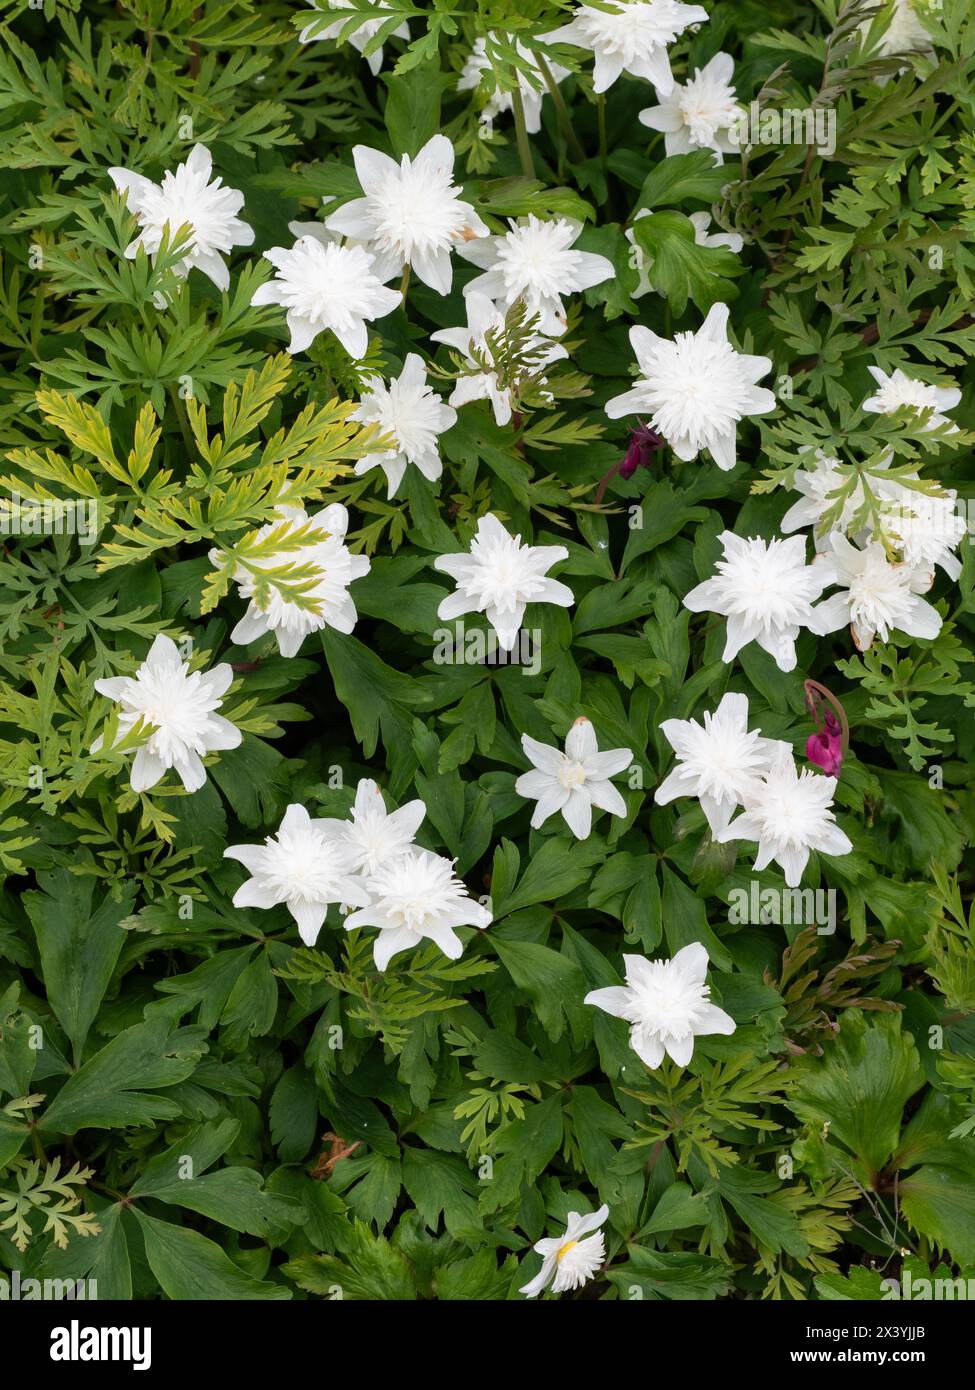 Anemone in legno effimero in fiore bianco, a doppia fioritura primaverile, Anemone nemorosa "Vestal" Foto Stock